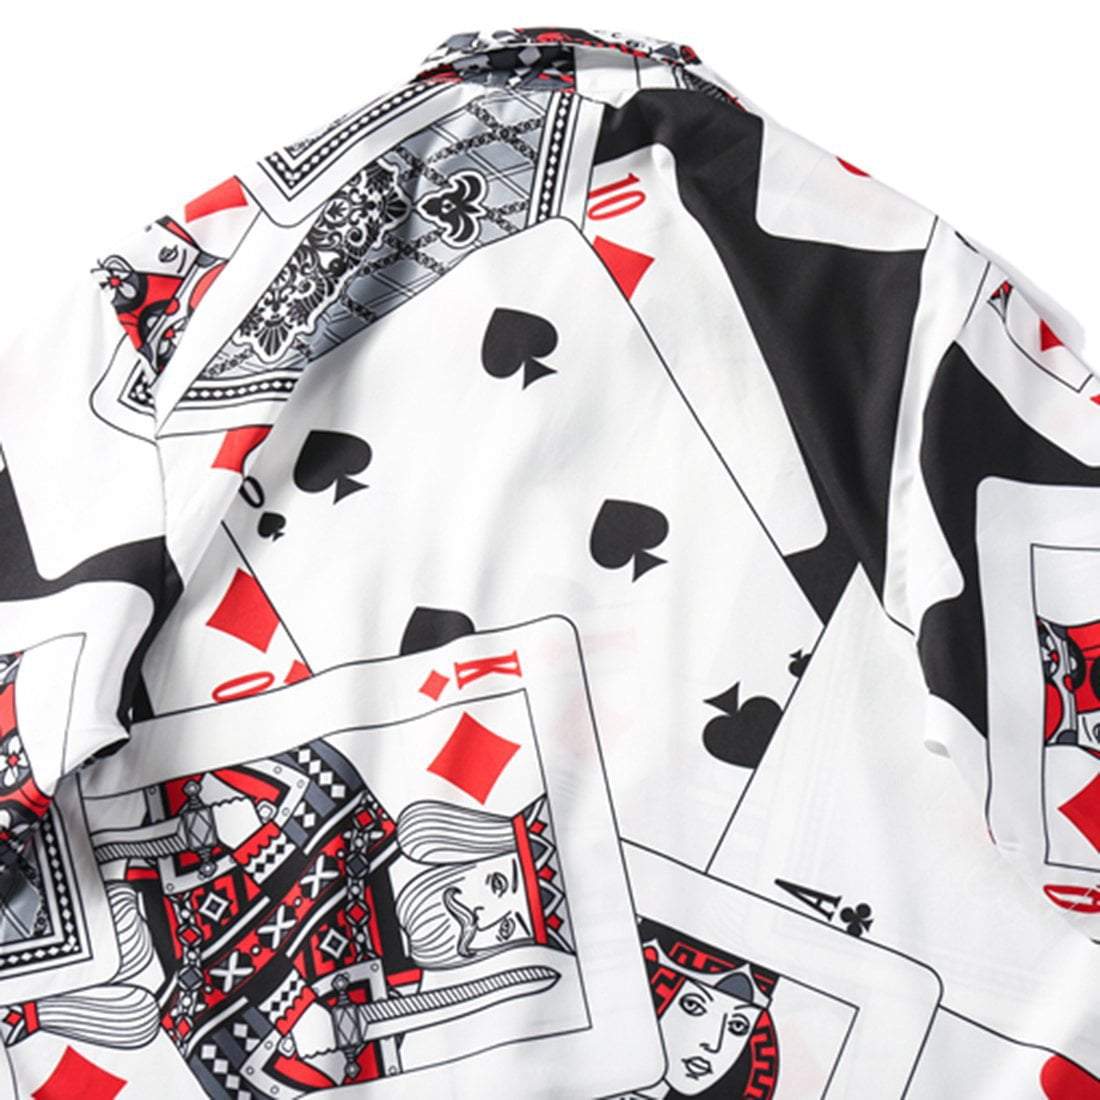 Eprezzy® - "Poker" Shirt Streetwear Fashion - eprezzy.com